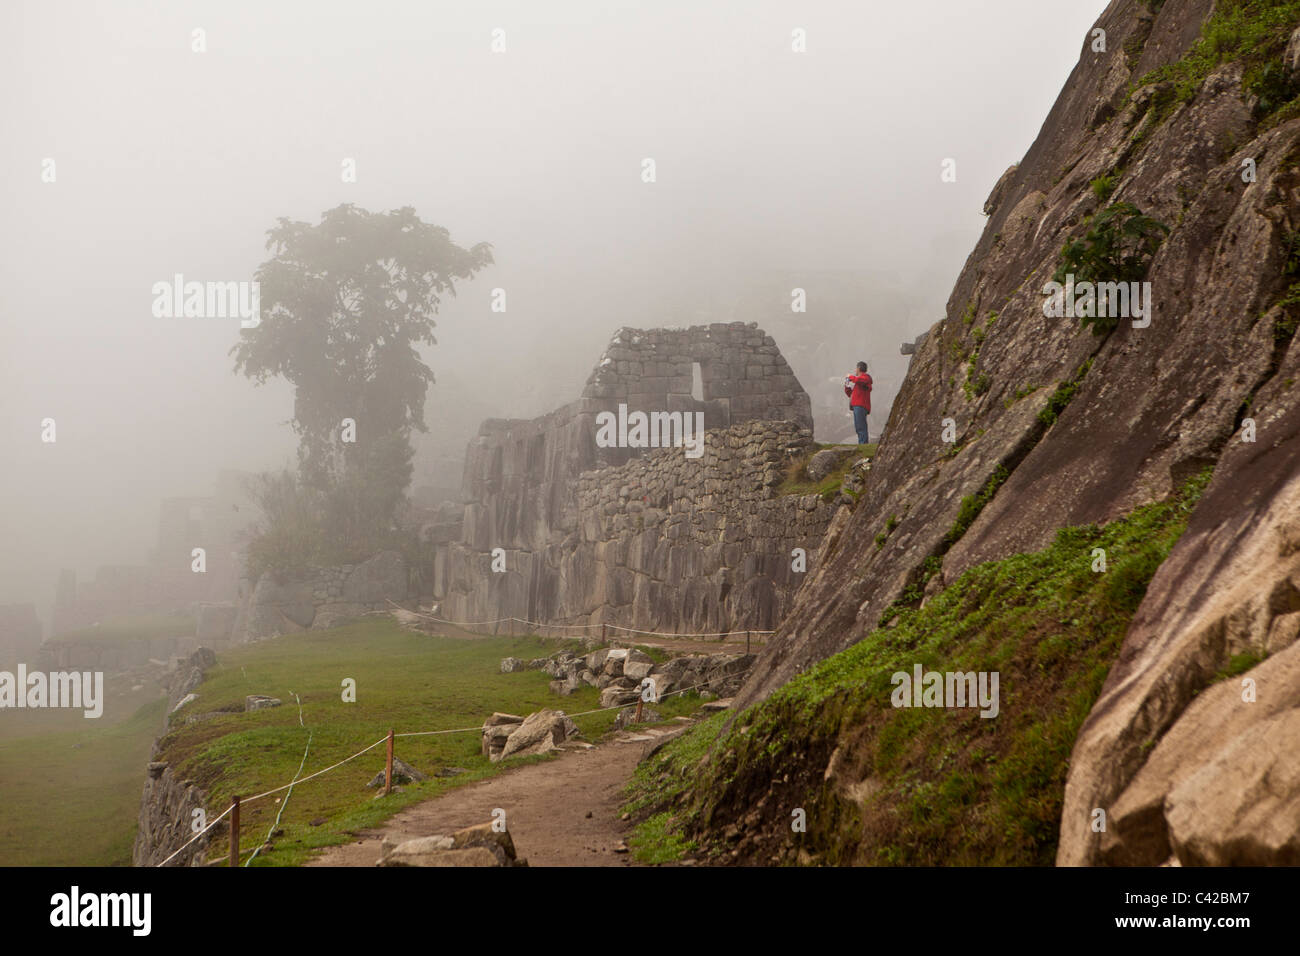 Il Perù, del XV secolo sito Inca situato a 2.430 metri (7,970 ft) sopra il livello del mare. Il turista. Foto Stock